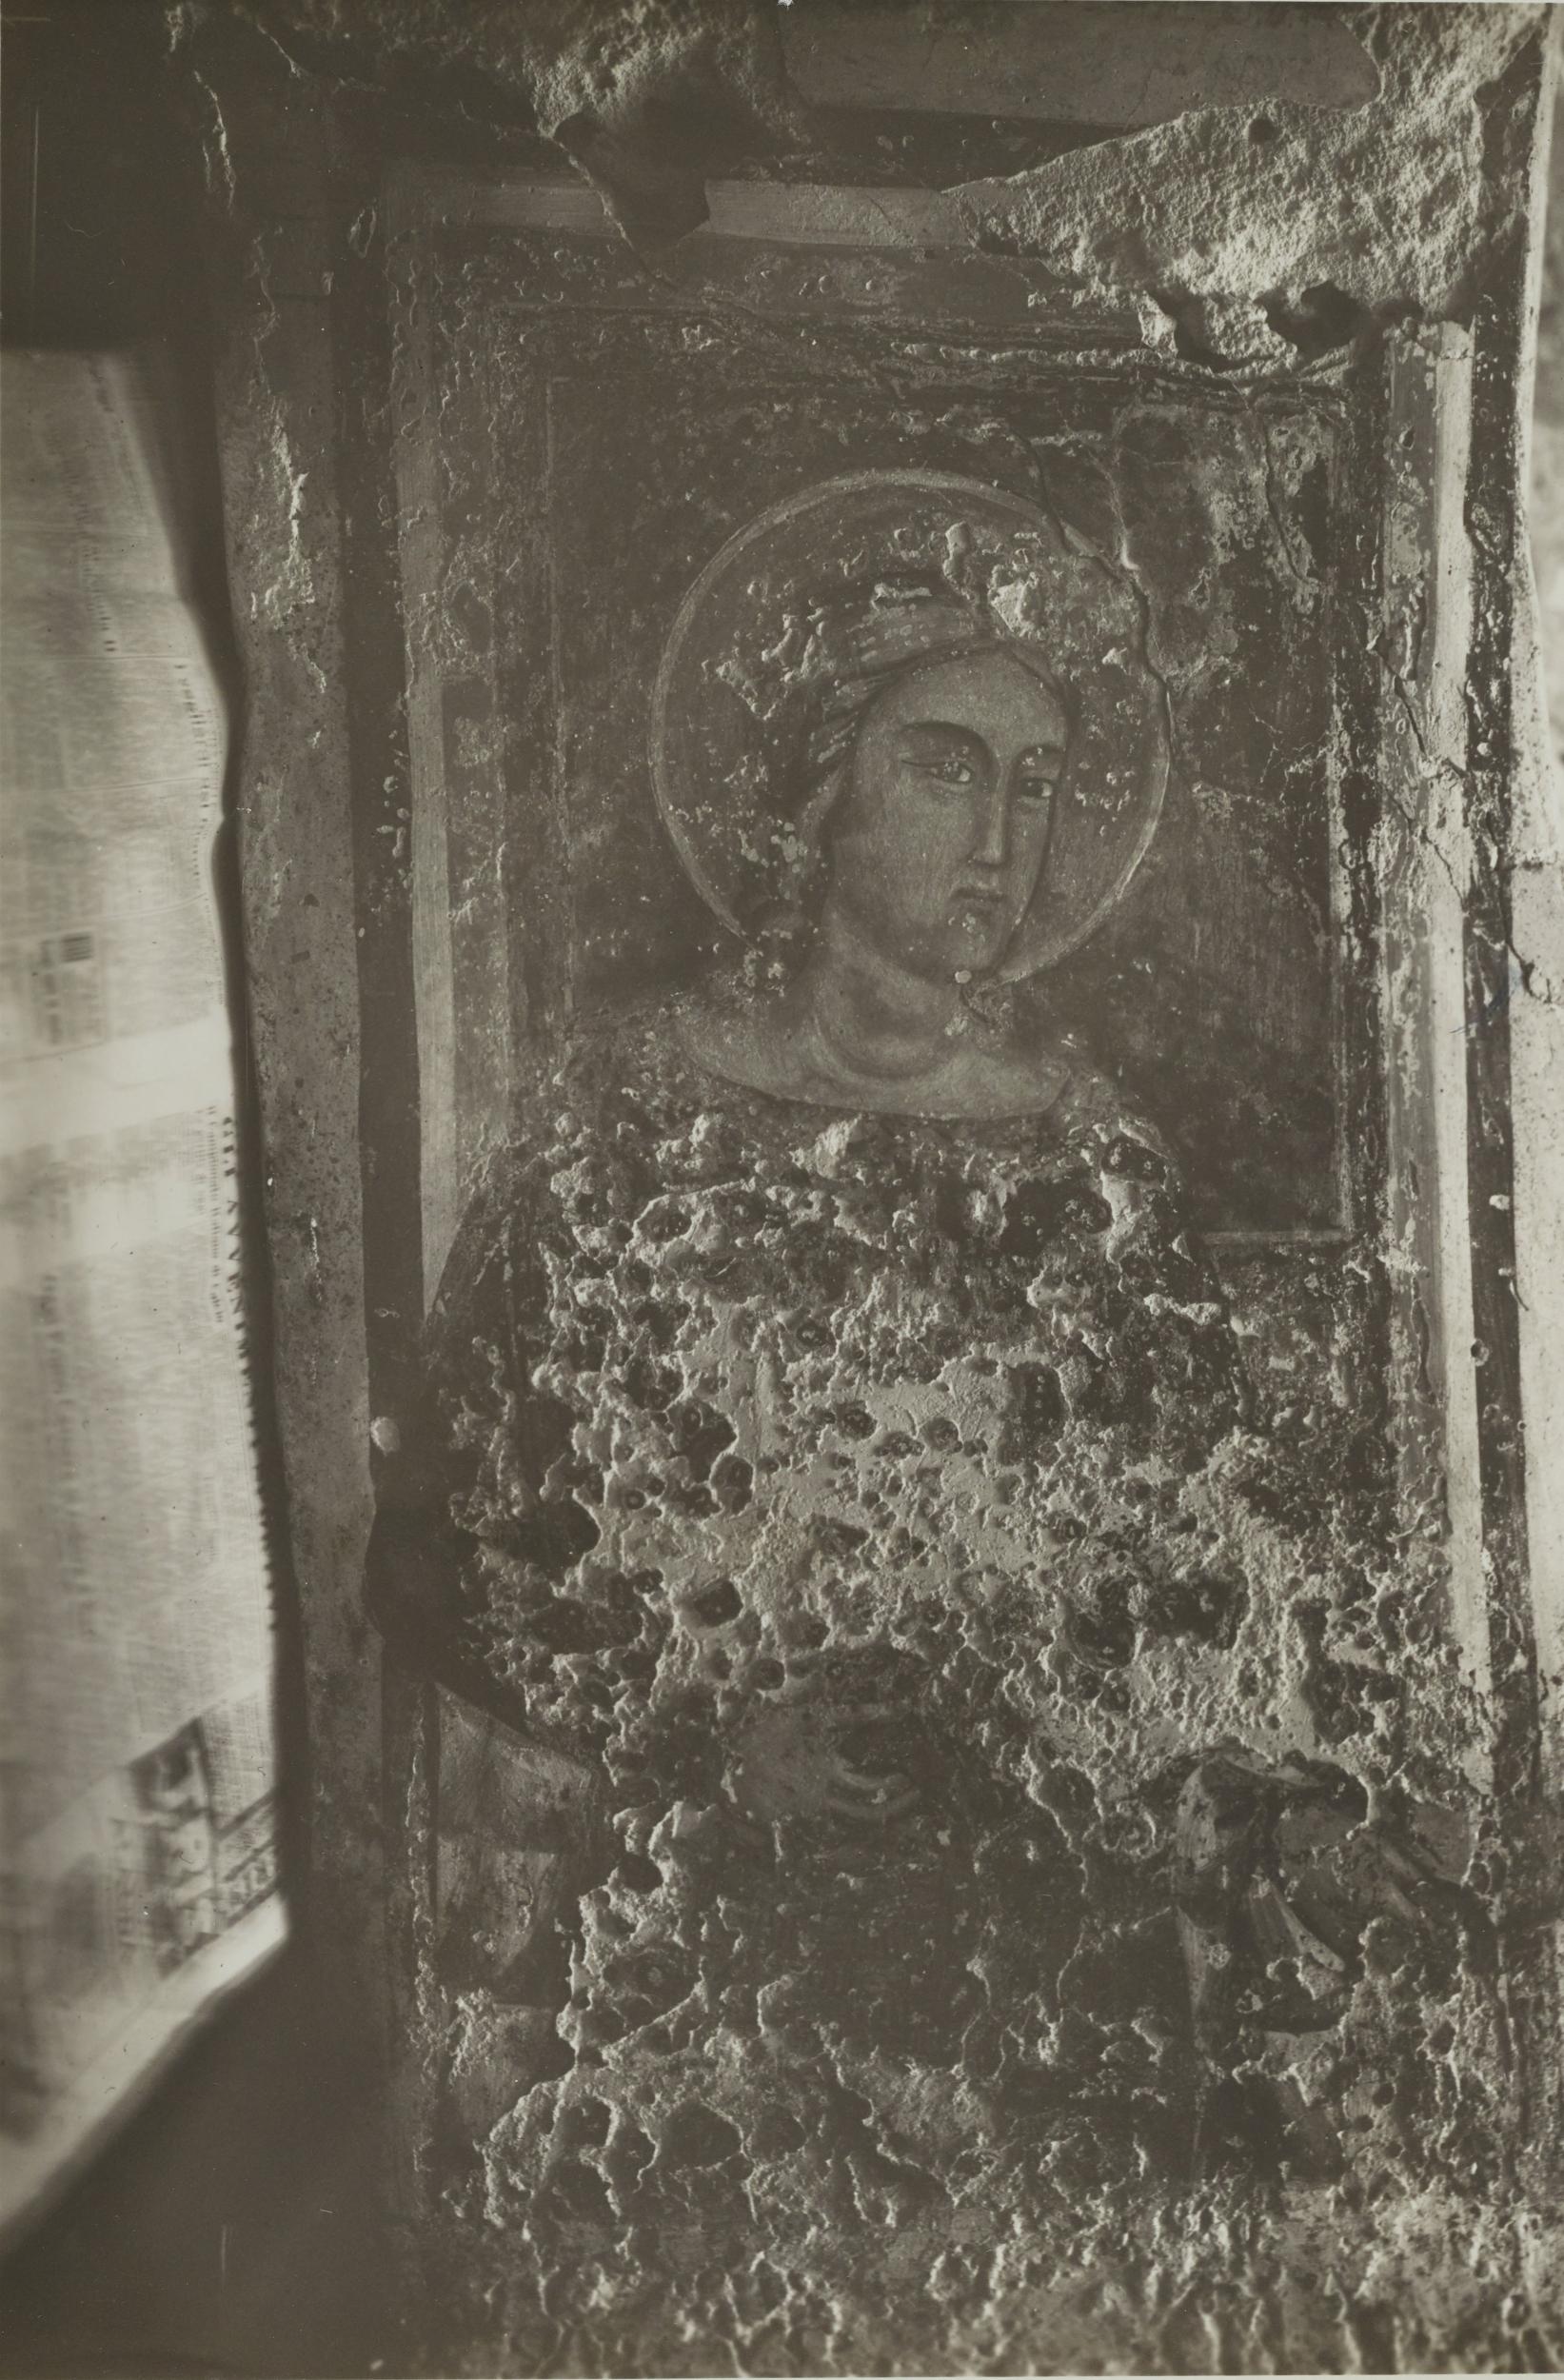 Fotografo non identificato, Andria - Chiesa di S. Croce, cripta, S. Dorotea, 1926-1950, gelatina ai sali d'argento/carta, MPI131865